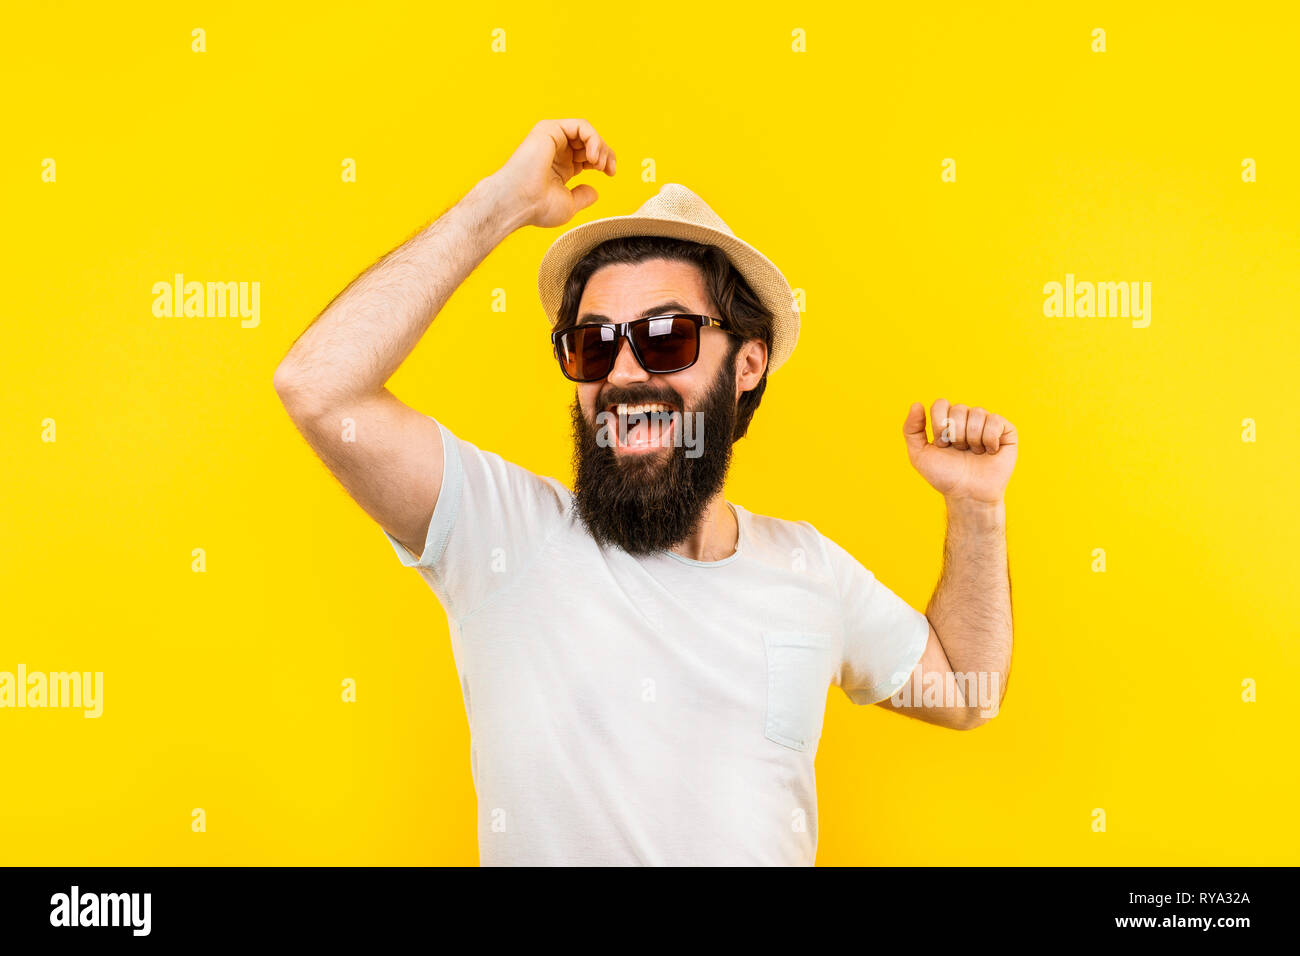 Retrato de estudio de un hombre barbado con un estado de ánimo positivo, un  chico de gafas de sol es el baile arco iris sobre un fondo amarillo, el  concepto de una